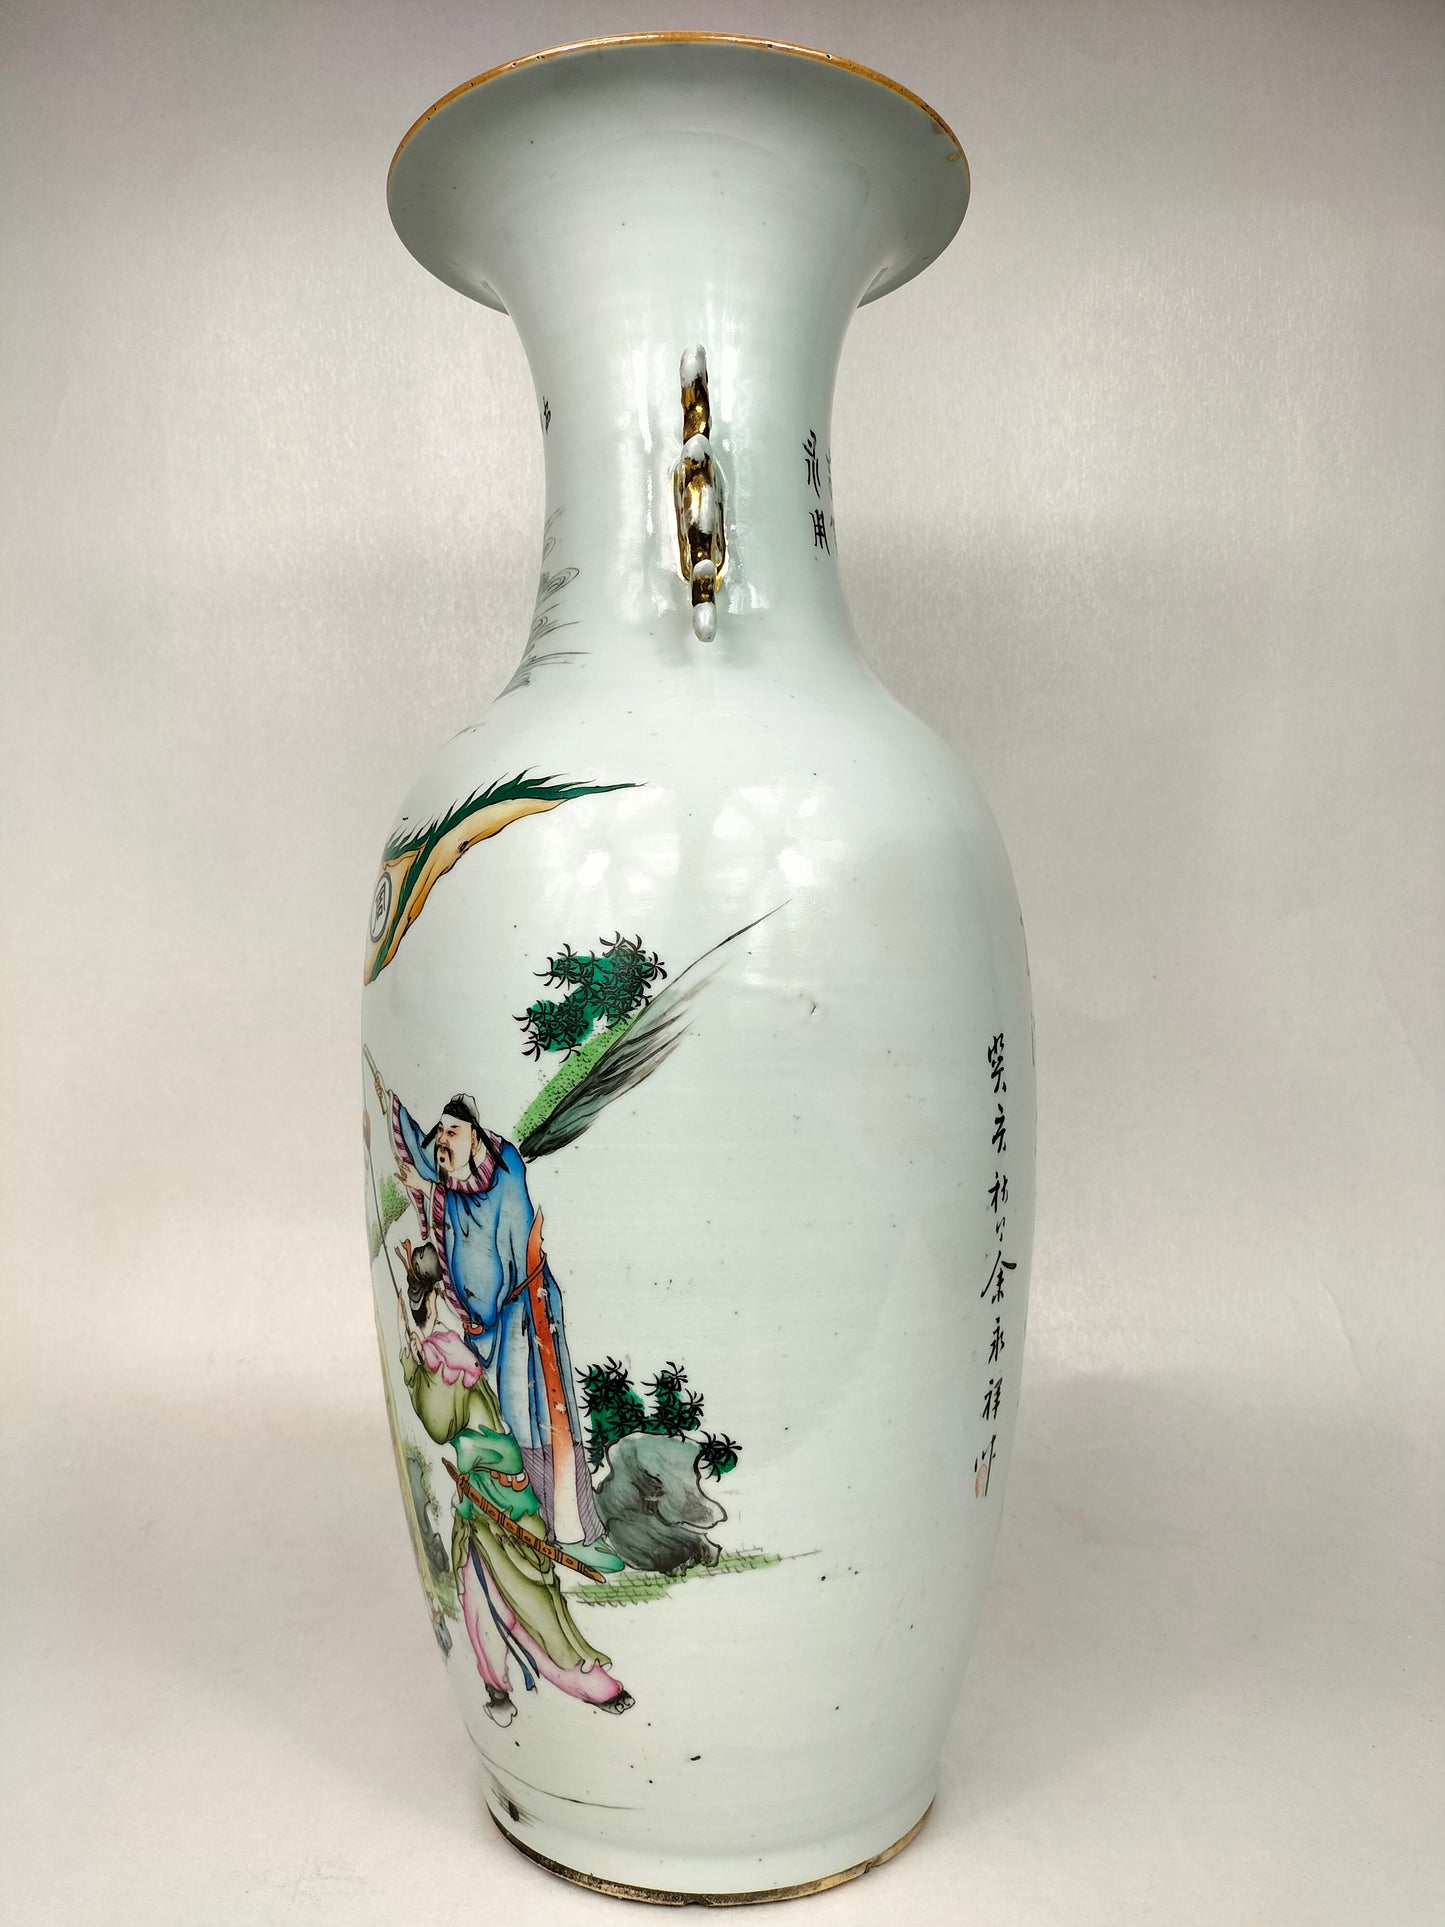 Grande vaso chinês antigo com cena imperial // Período da República (1912-1949)